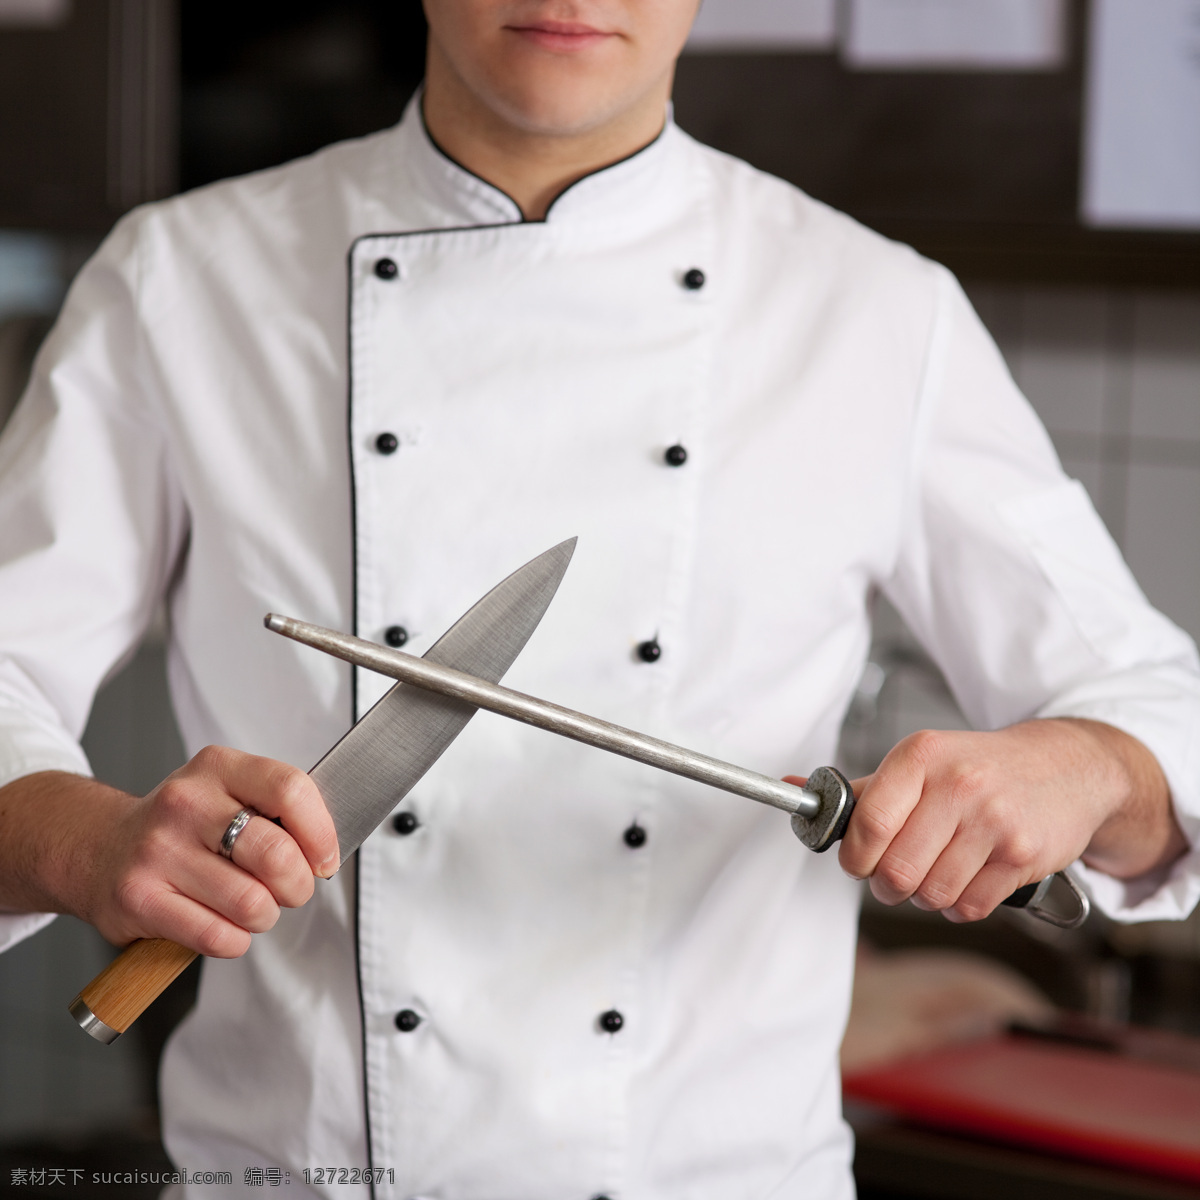 磨刀的厨师 菜刀 不锈钢刀具 厨房厨具 厨房用品 餐具厨具 餐饮美食 白色